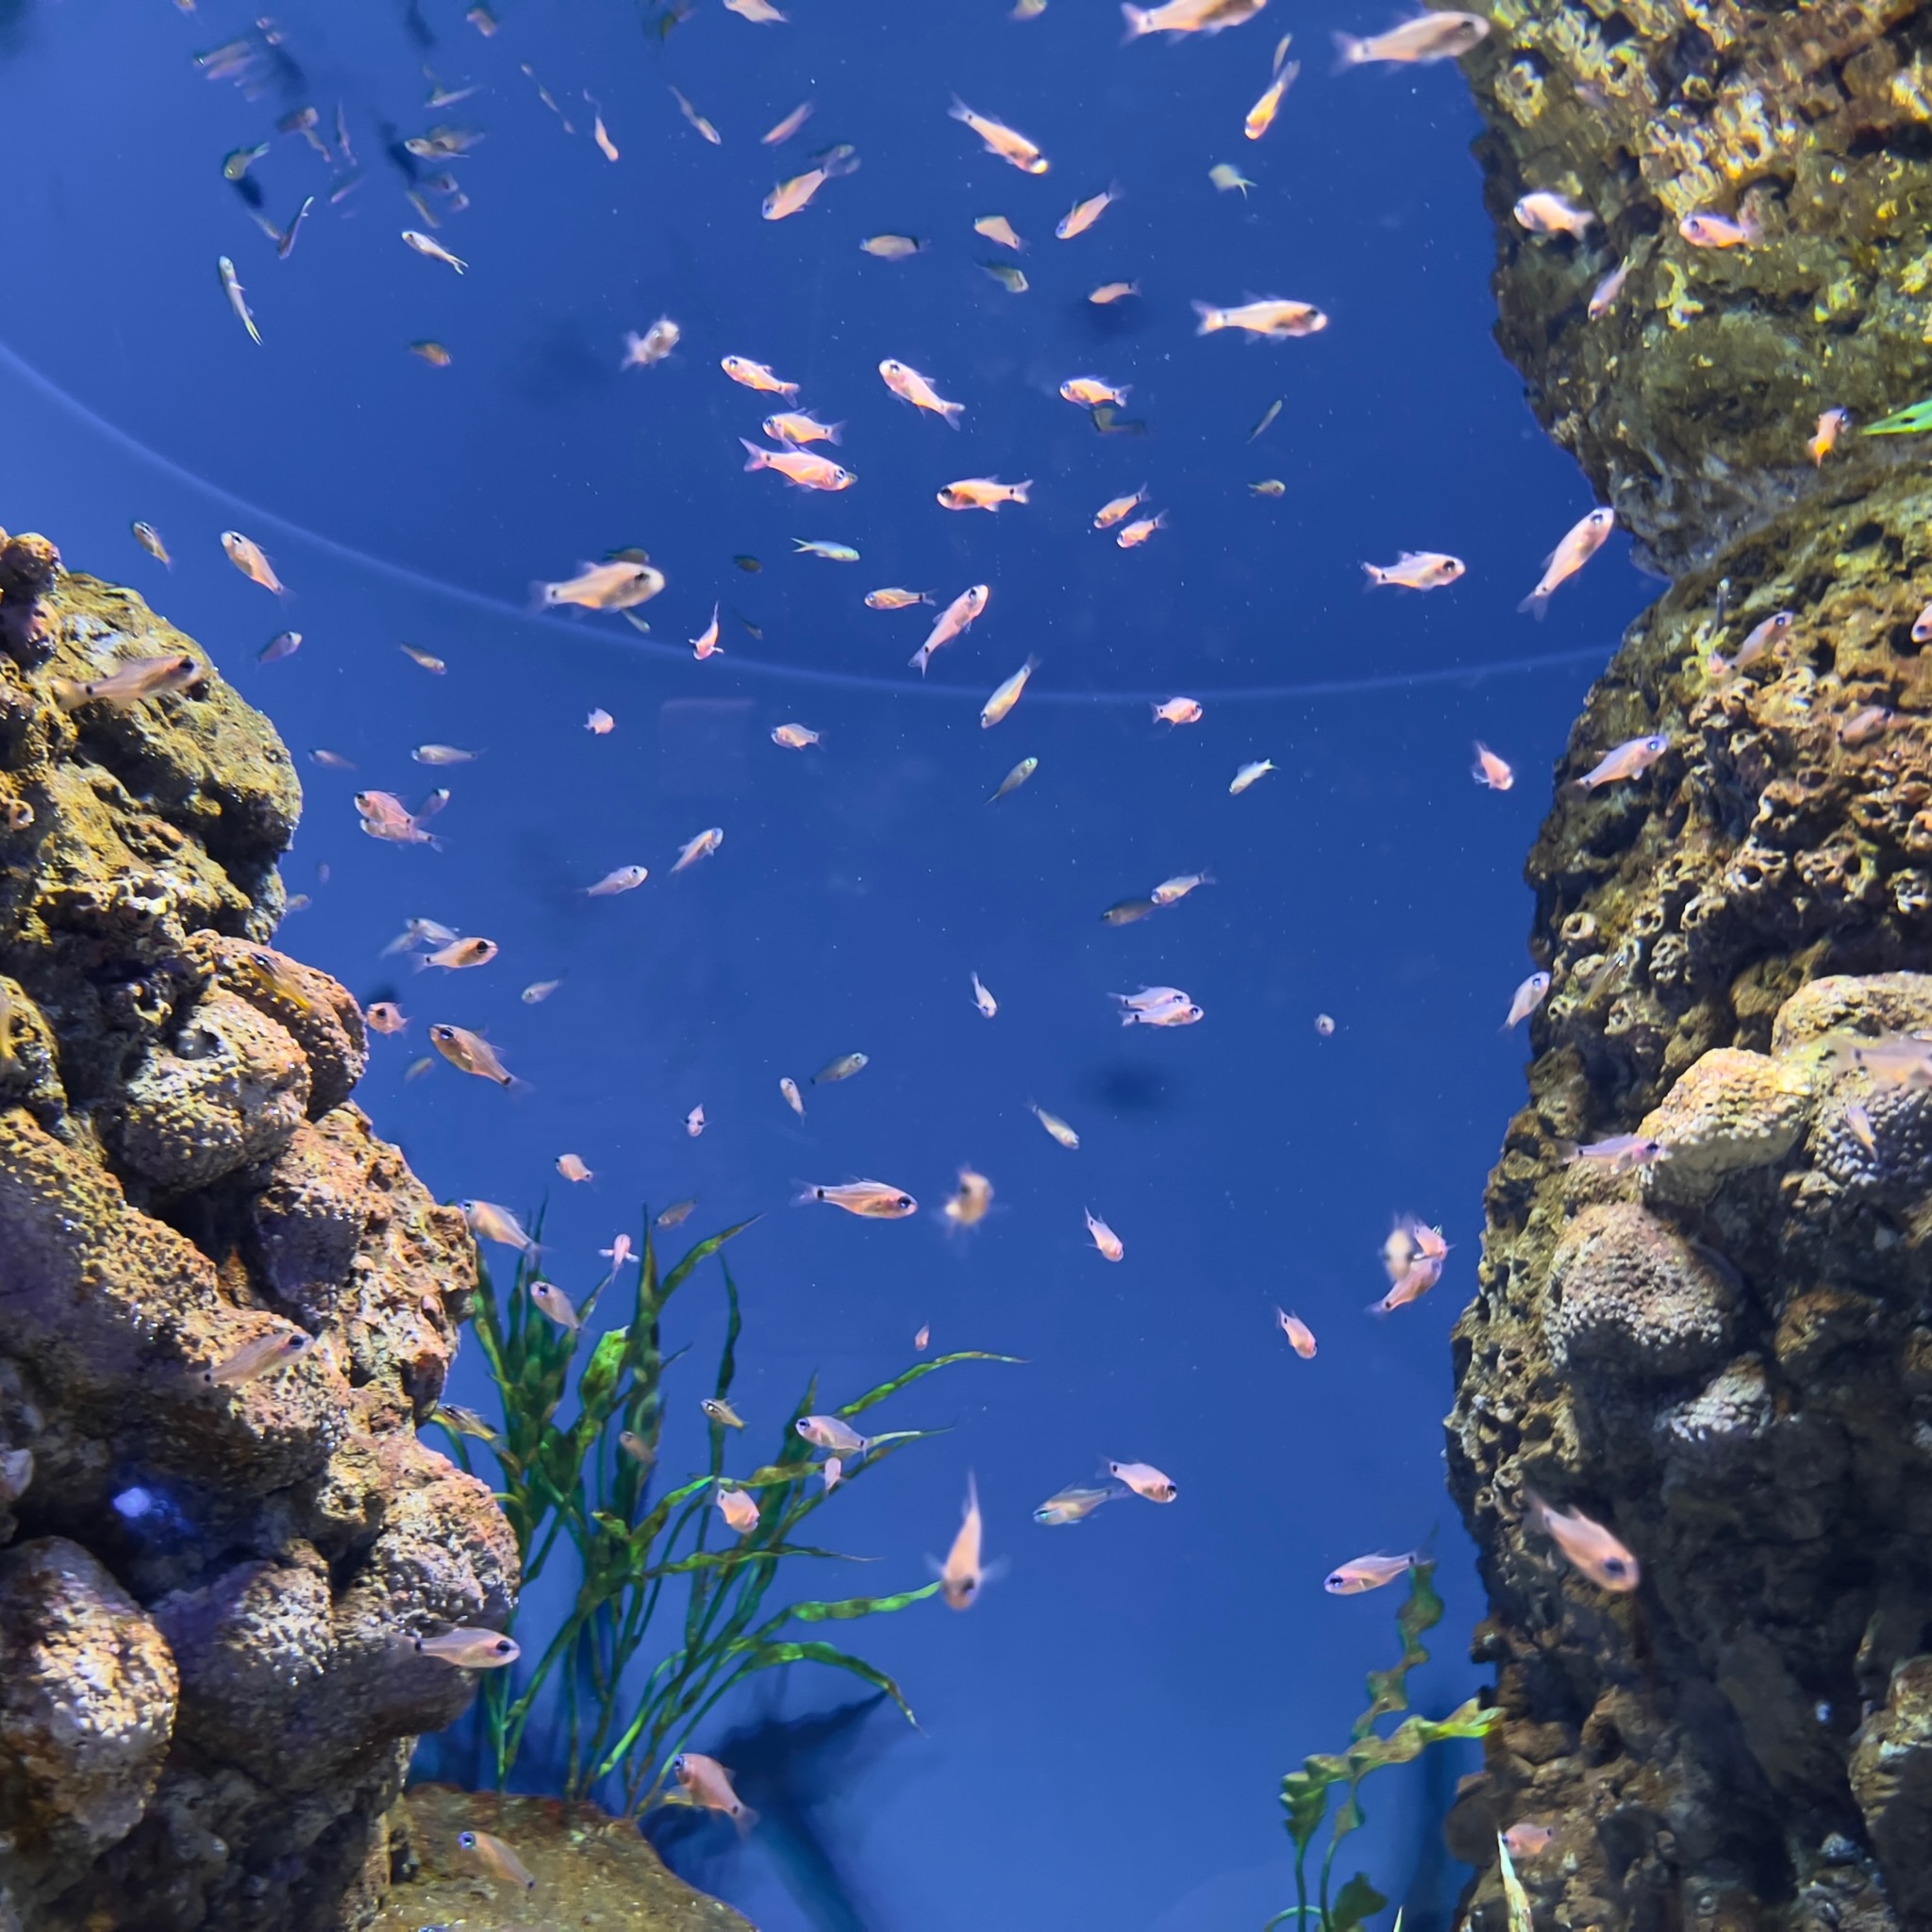 Oman Aquarium